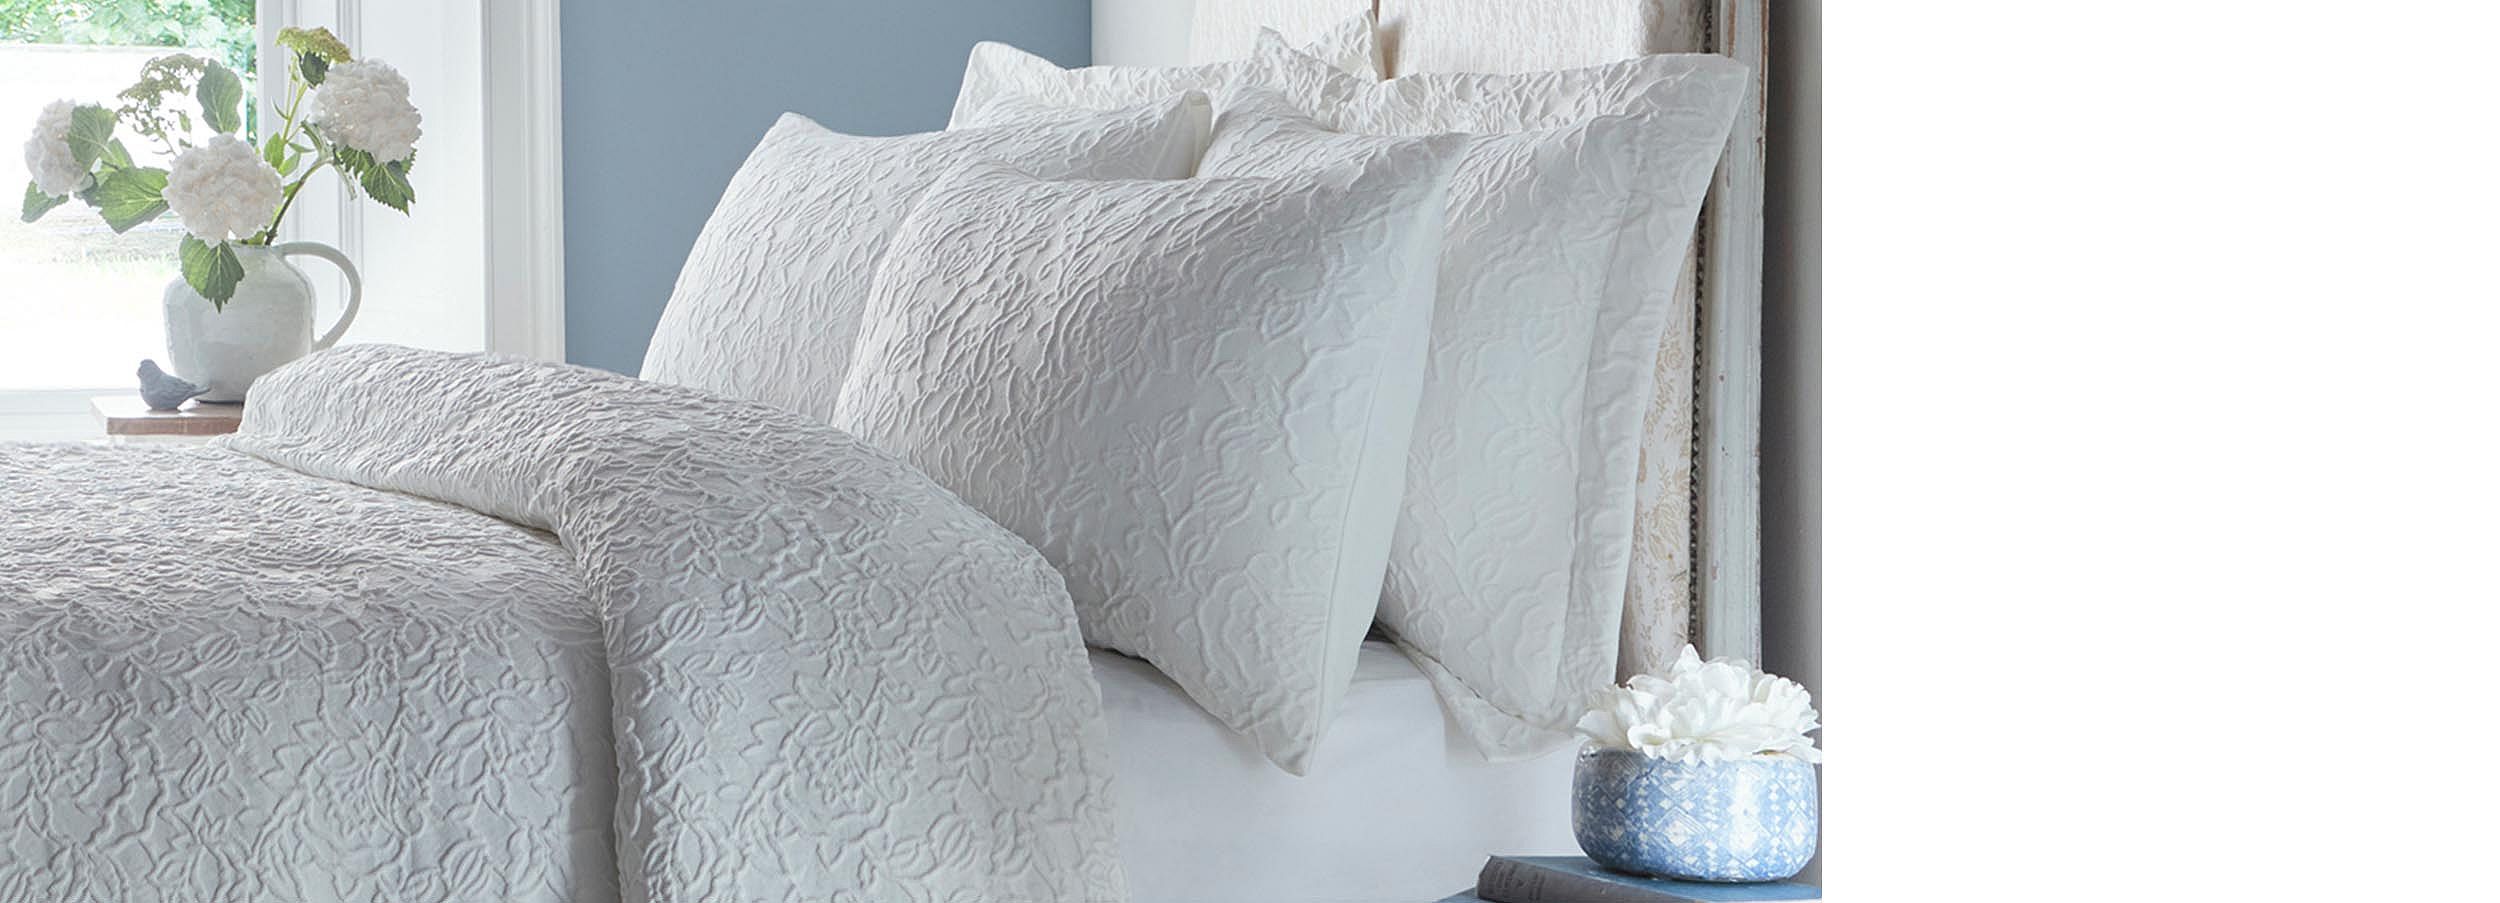 SHOP Luxury Bed Linen